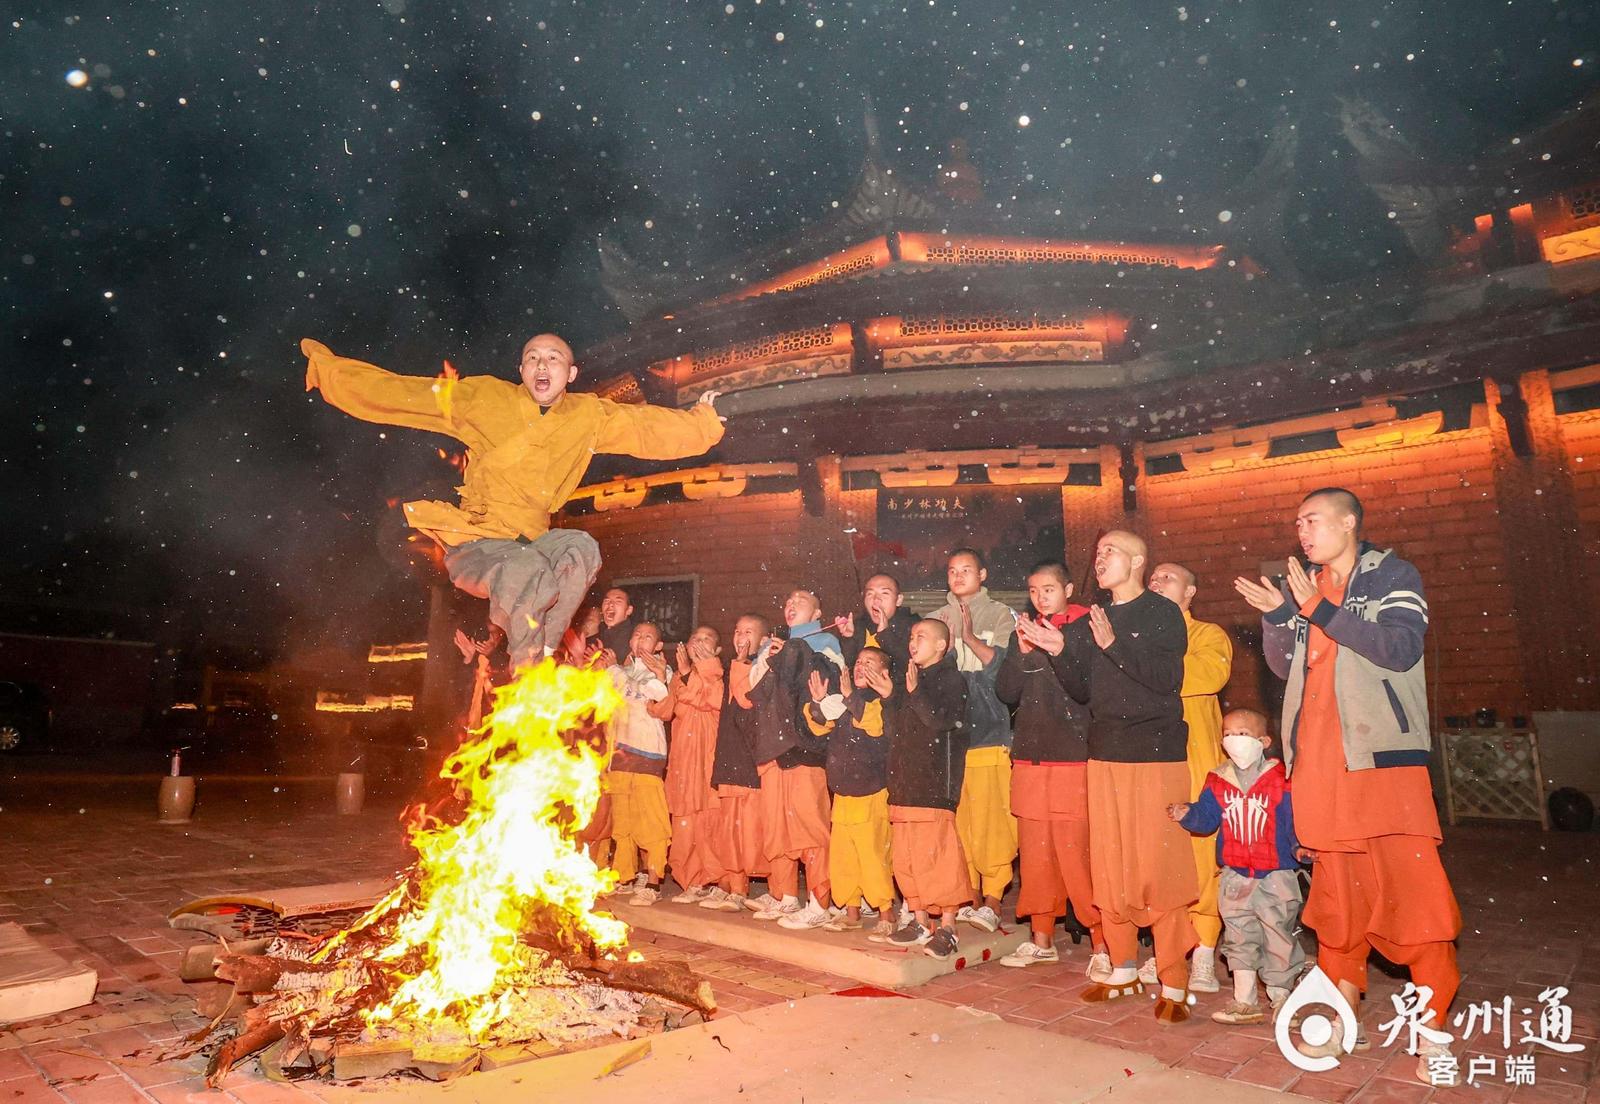 12月31日当晚,一场别样的跳火堆在泉州少林寺举行,方丈释常定带着武僧